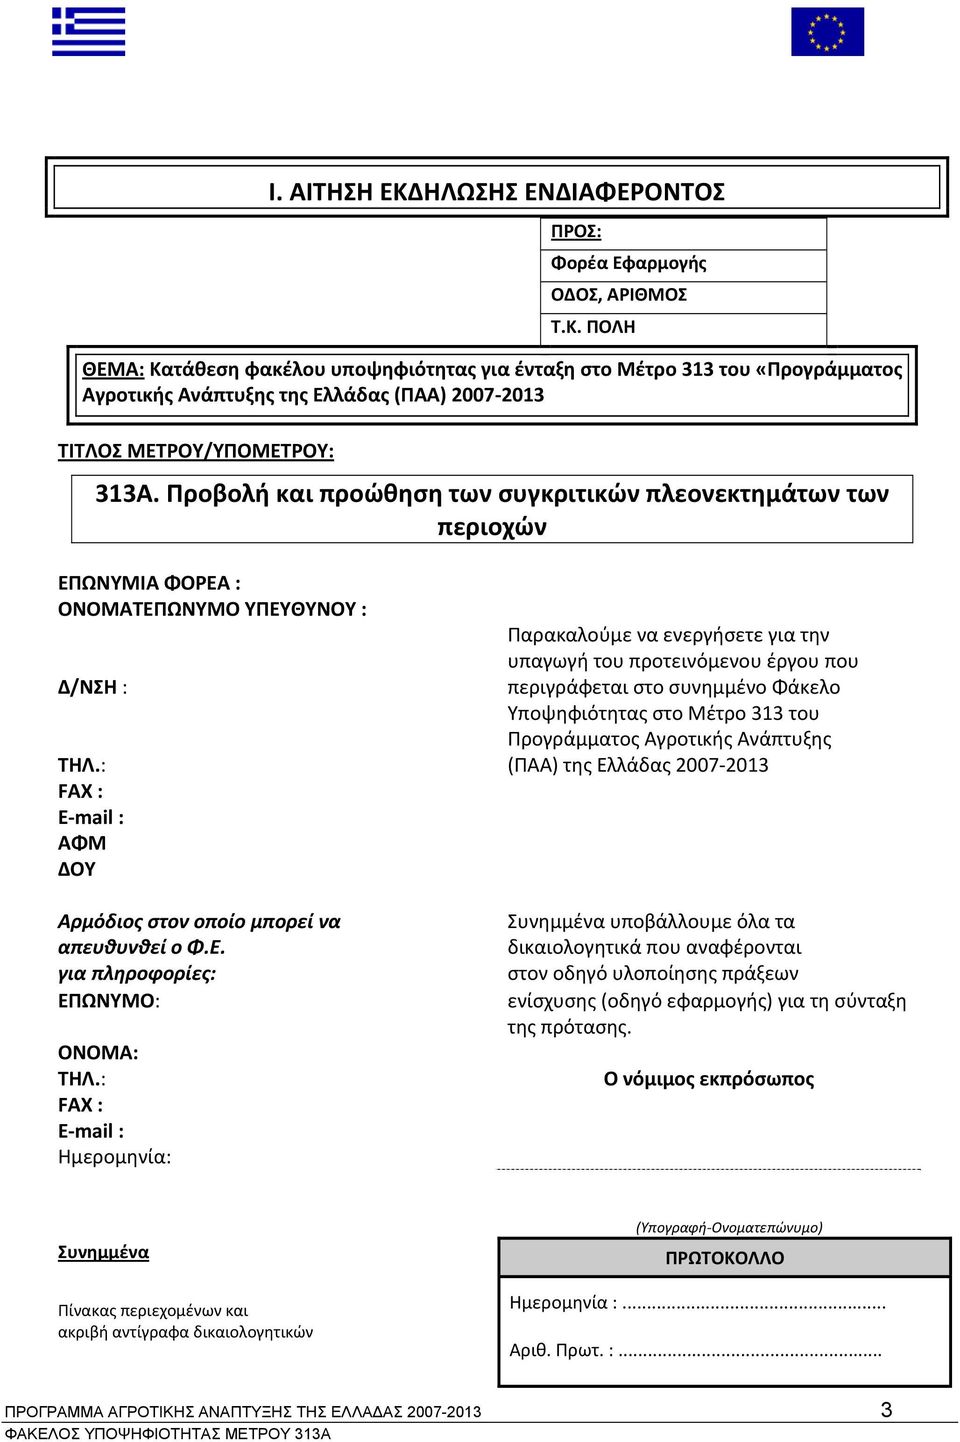 στο συνημμένο Φάκελο Υποψηφιότητας στο Μέτρο 313 του Προγράμματος Αγροτικής Ανάπτυξης ΤΗΛ.: (ΠΑΑ) της Ελλάδας 2007 2013 FAX : Ε mail : ΑΦΜ ΔΟΥ Αρμόδιος στον οποίο μπορεί να απευθυνθεί ο Φ.Ε. για πληροφορίες: ΕΠΩΝΥΜΟ: ΟΝΟΜΑ: ΤΗΛ.